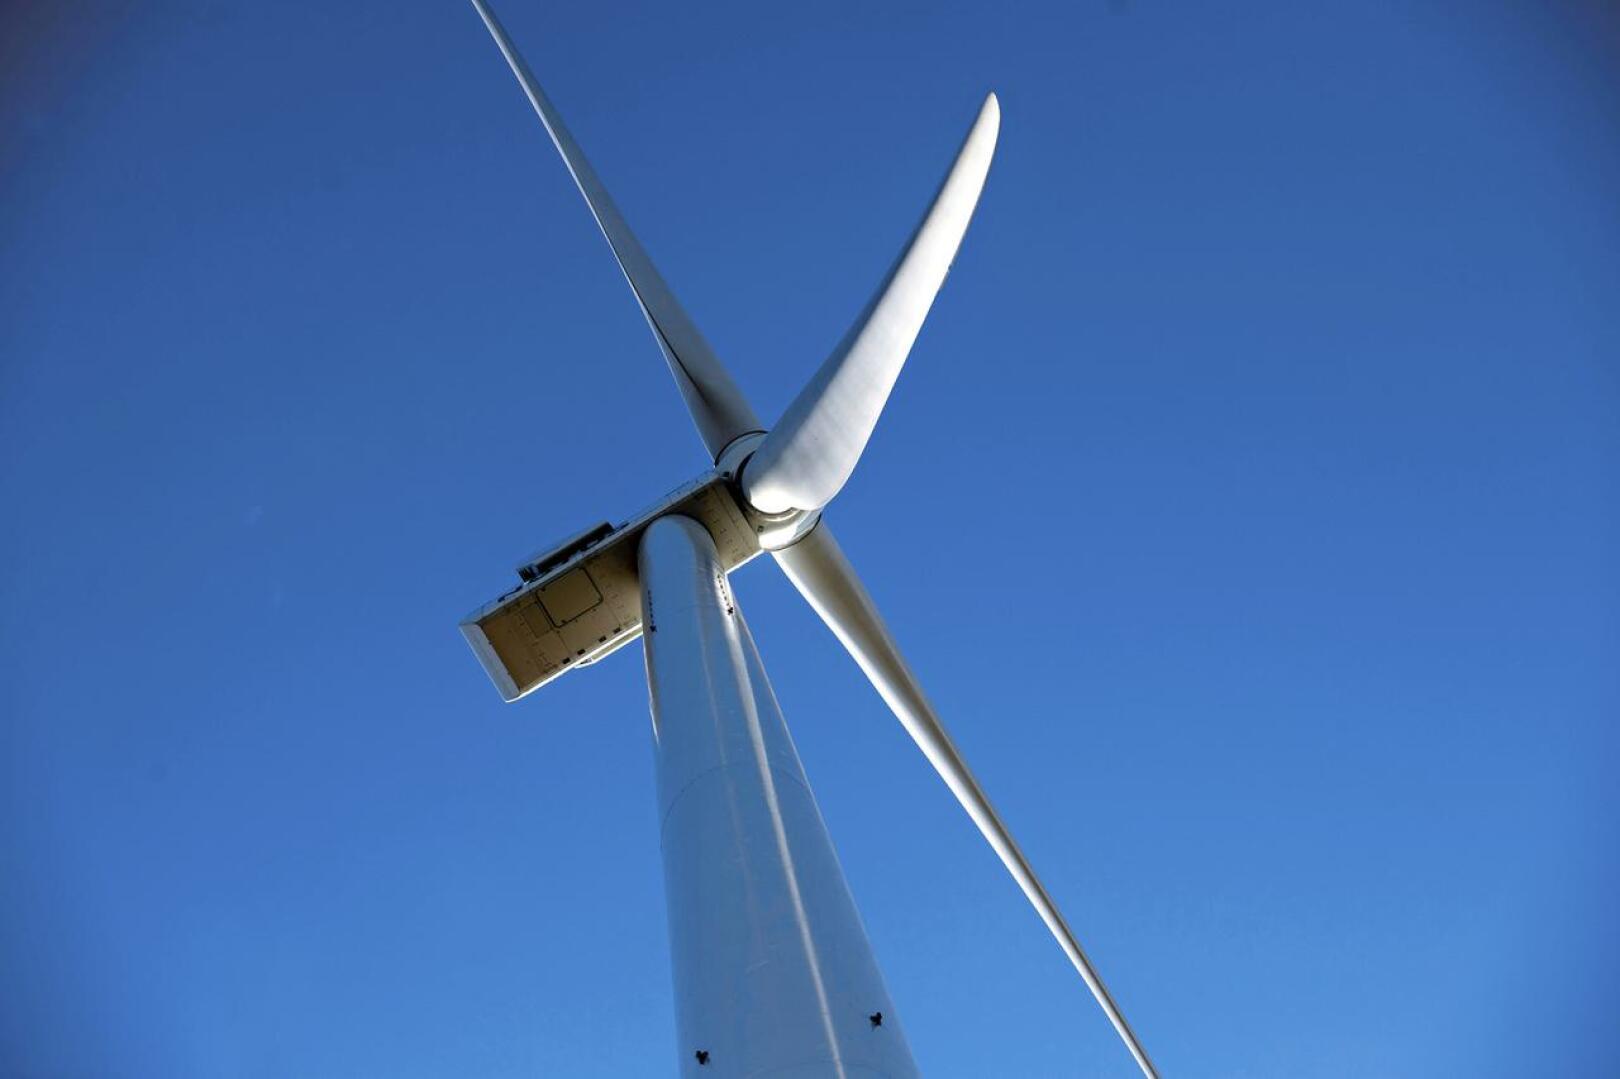 Tuulivoimapuistokaavat, joista valitukset tehtiin, mahdollistaisivat yhteensä 88 tuulivoimalan rakentamisen Haapavedelle jo luvitettujen ja osin rakenteilla olevien 14:n voimalan lisäksi.